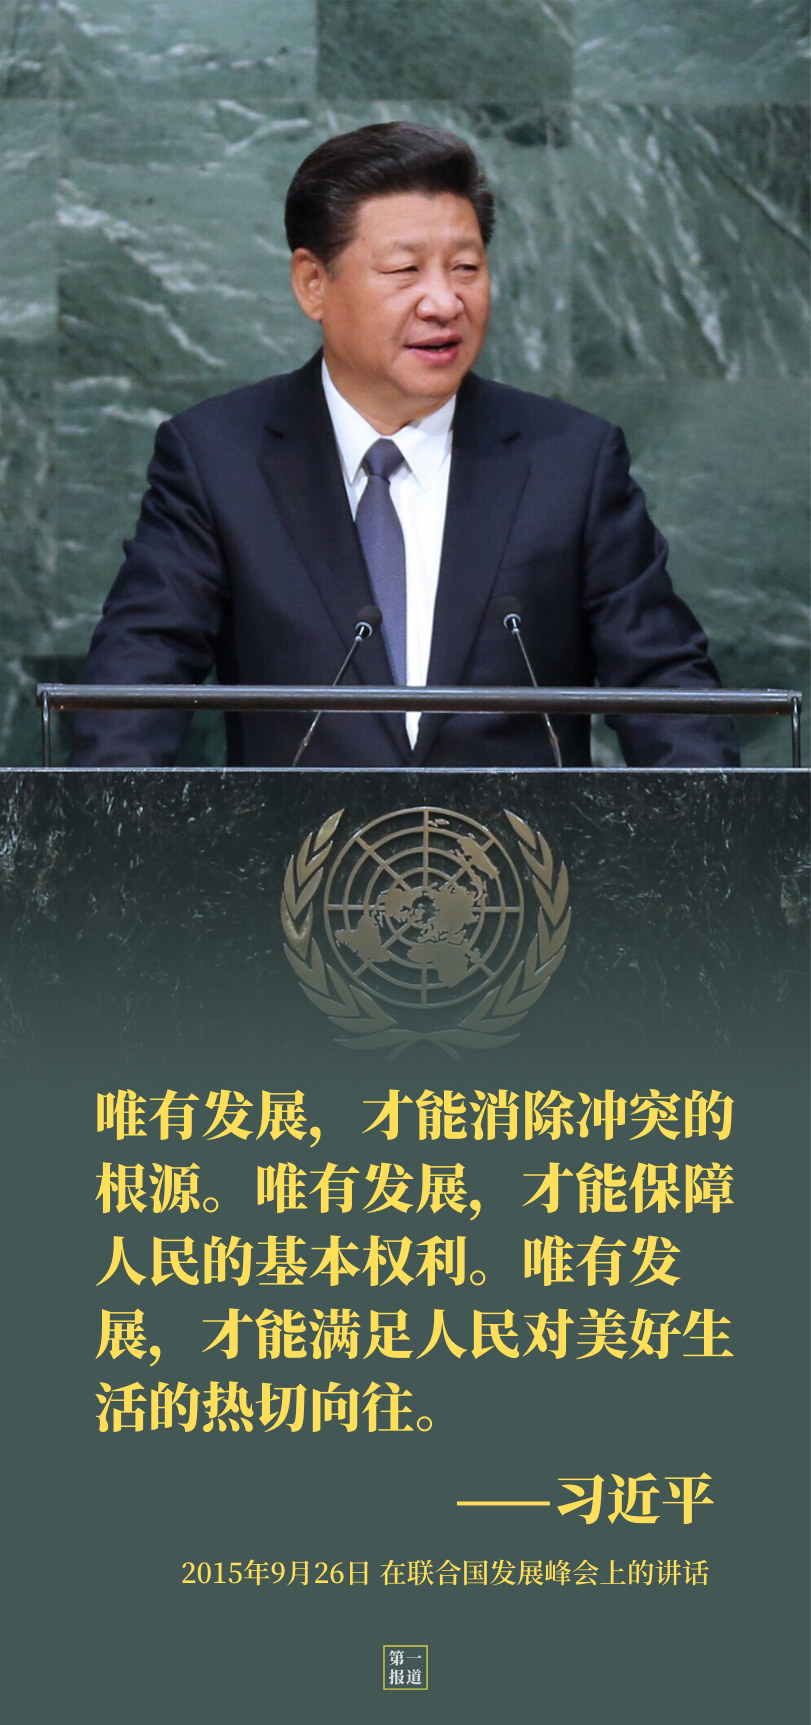 联合国主席照片图片